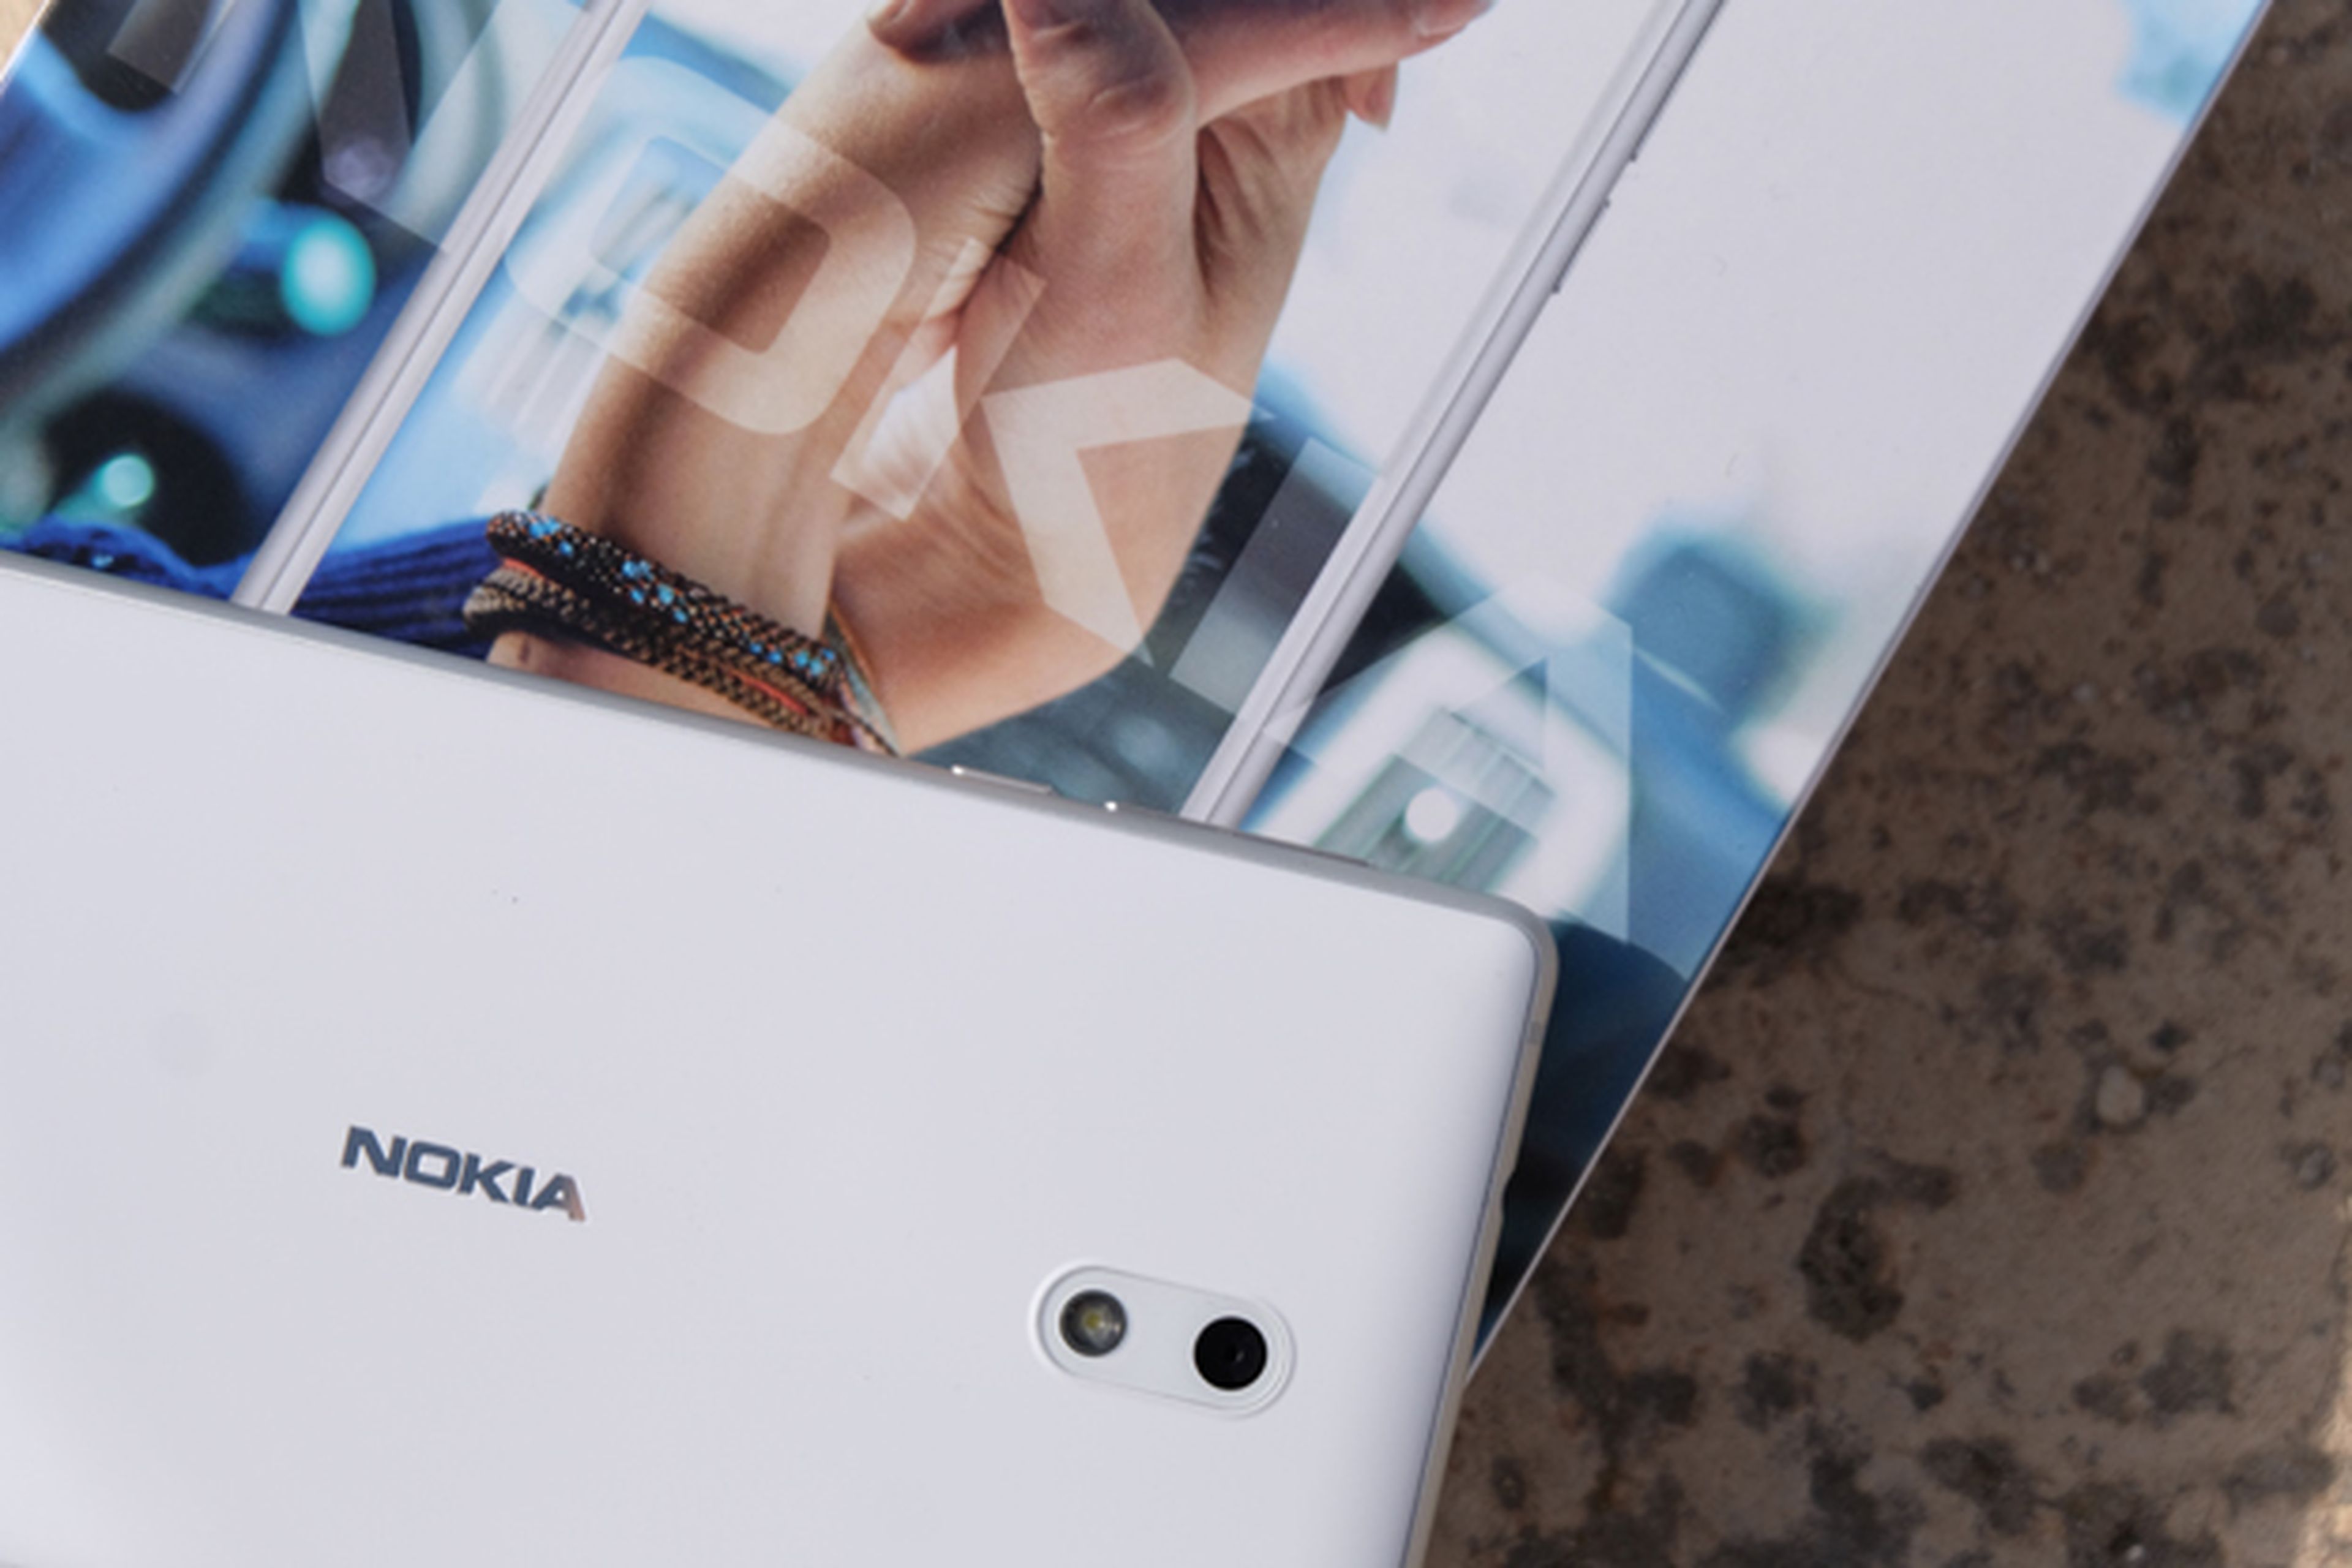 La conclusión tras probar el Nokia 3 es que esperábamos más de la nueva Nokia